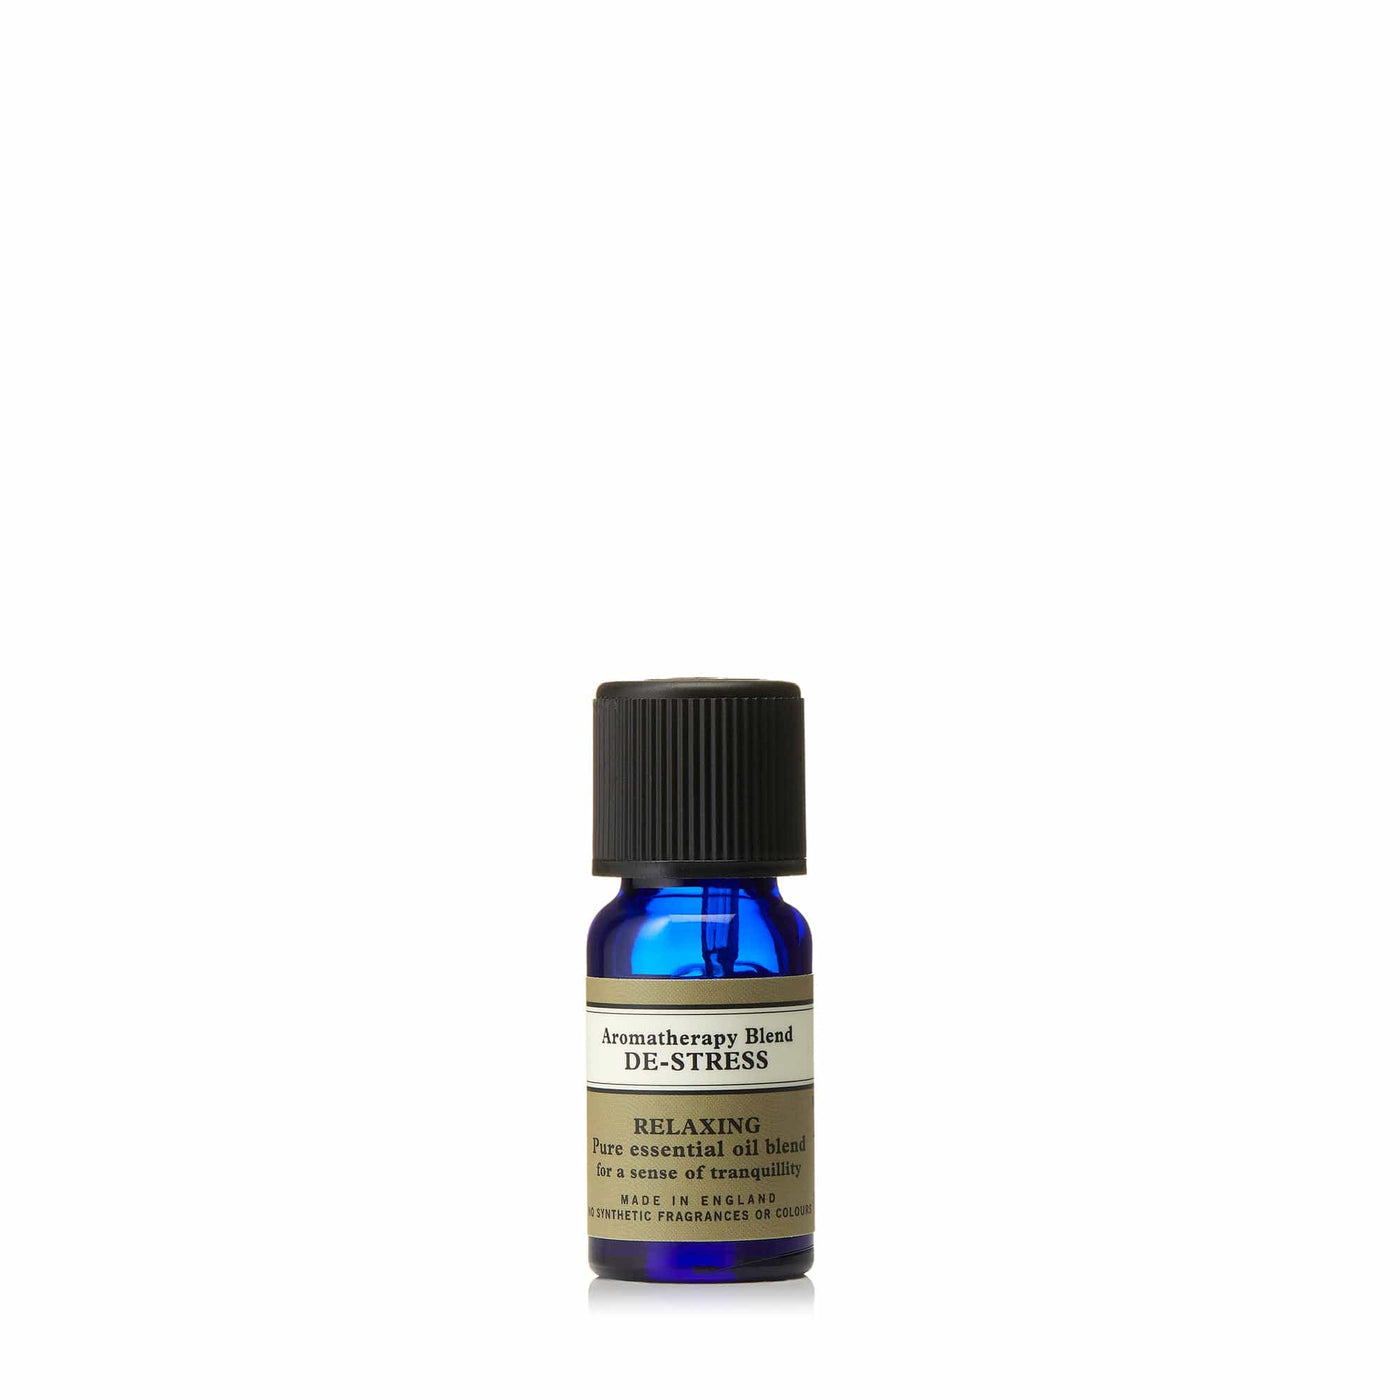 Neal's Yard Remedies Aromatherapy De-Stress Aromatherapy Blend 0.34 fl. oz